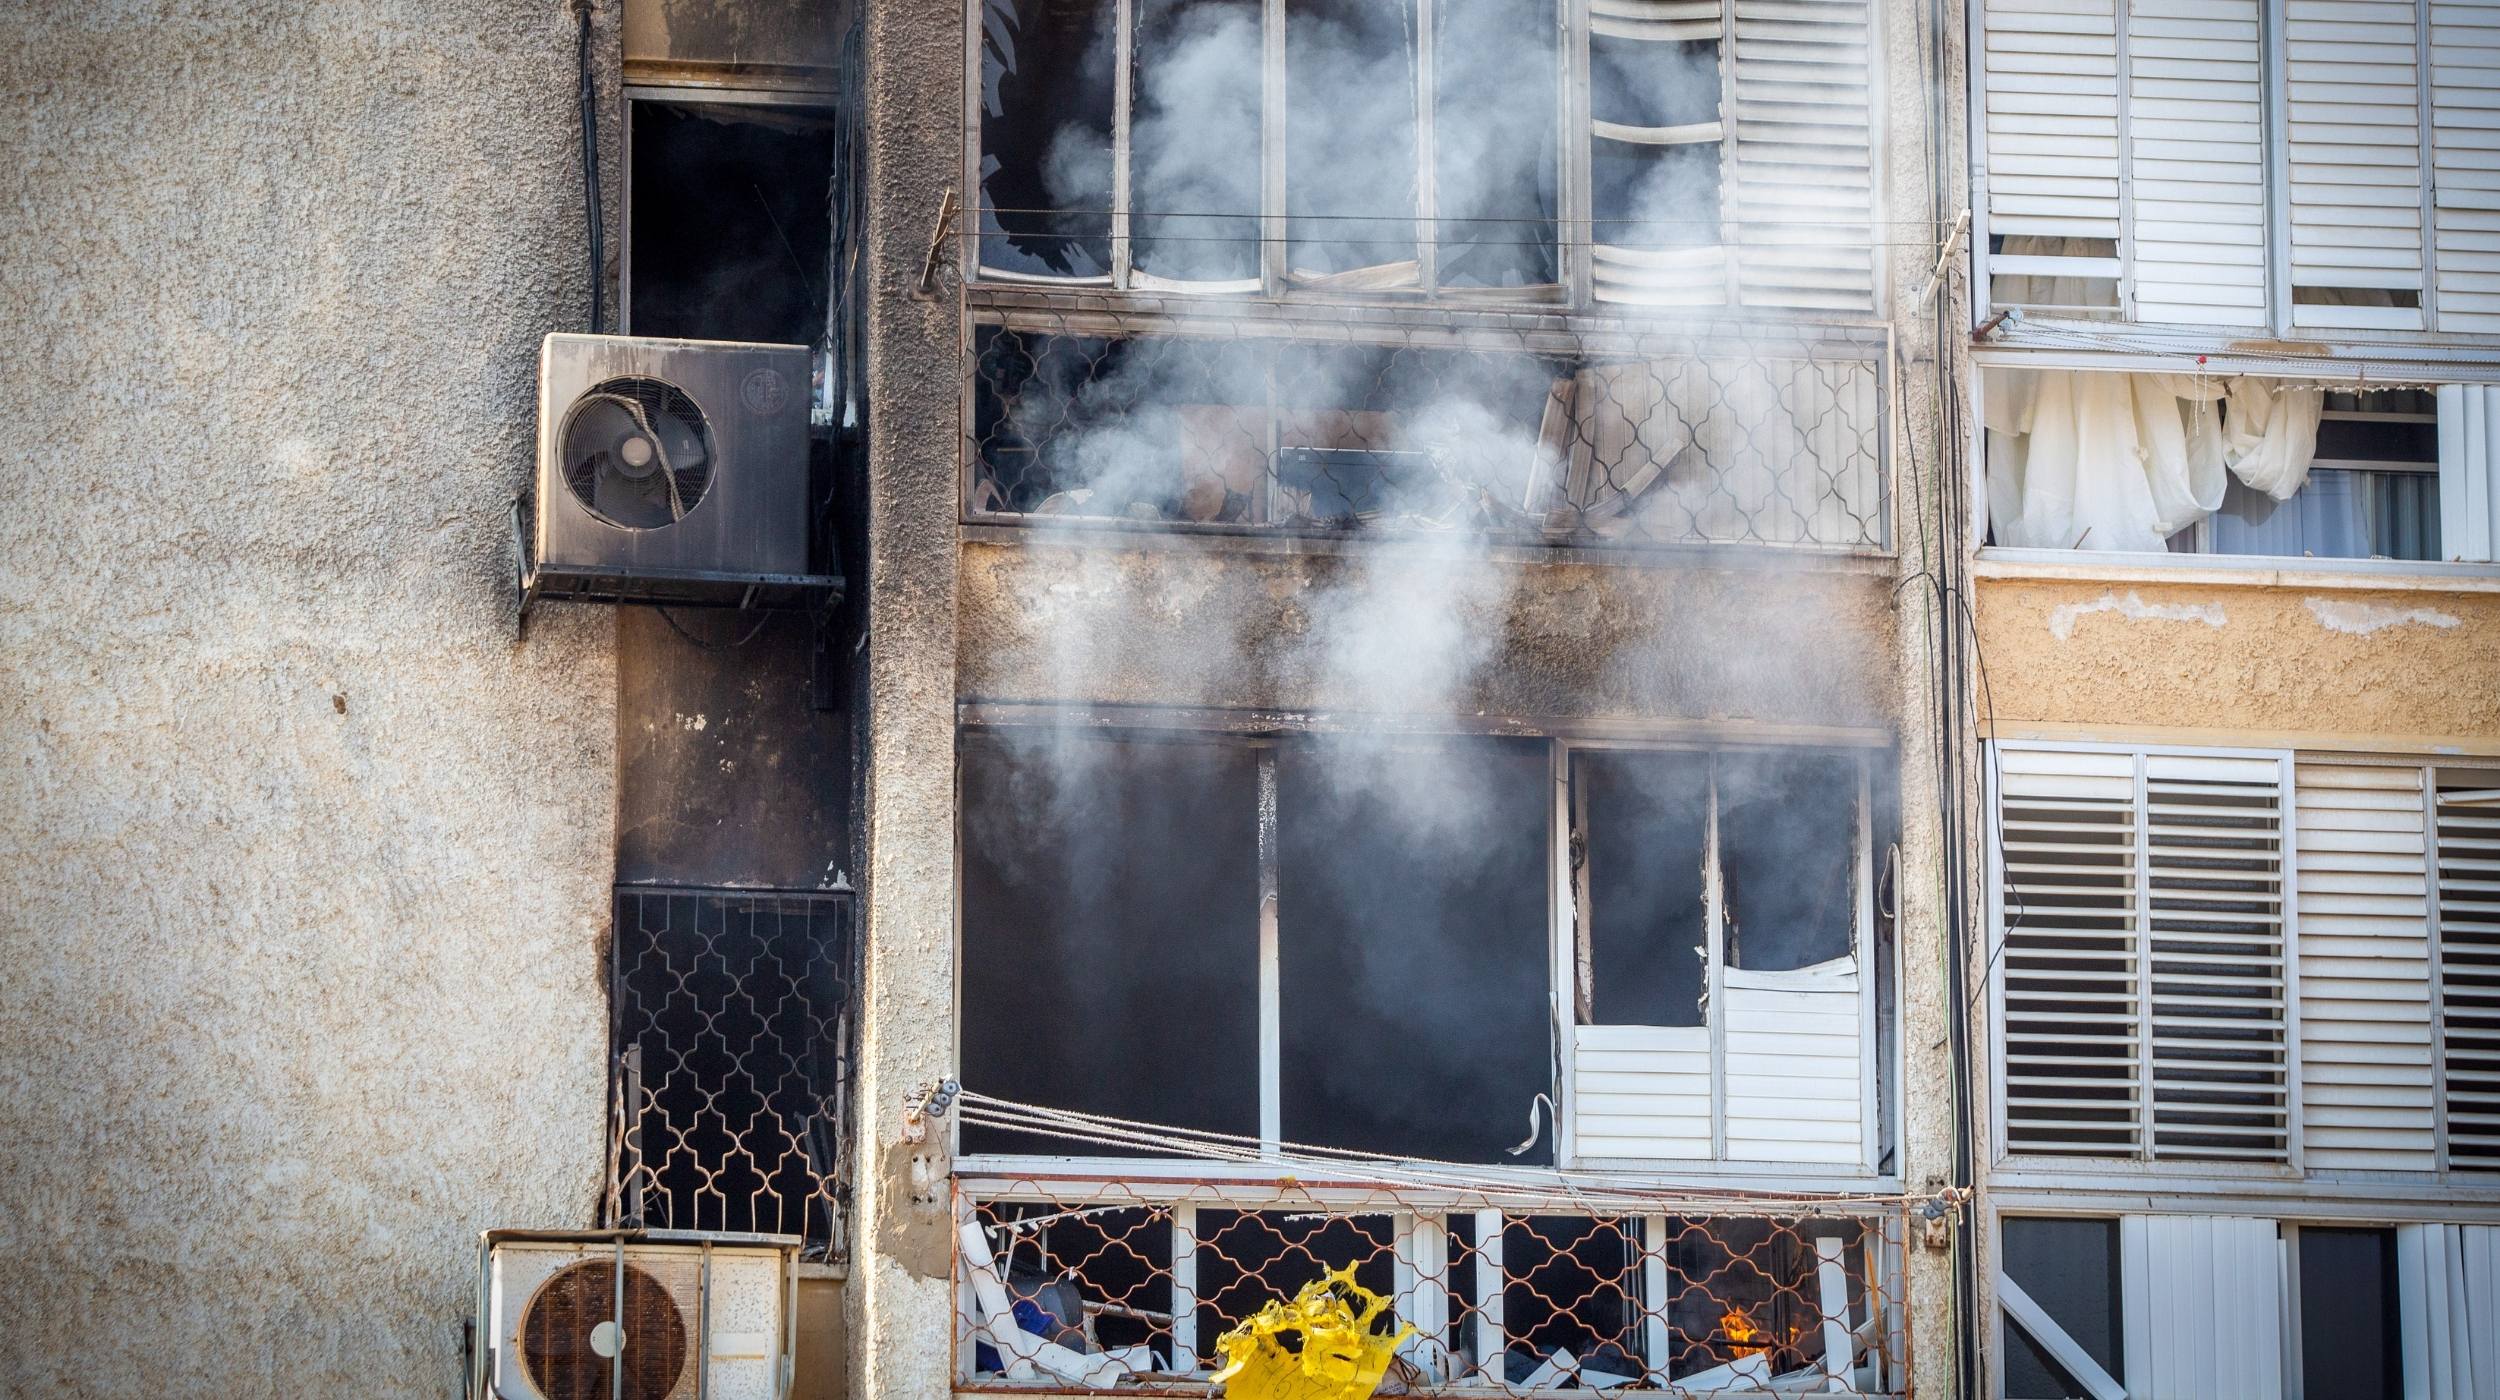 פגיעה ישירה בבית מגורים באשקלון בשבוע שעבר | צילום: אדי ישראל, פלאש 90